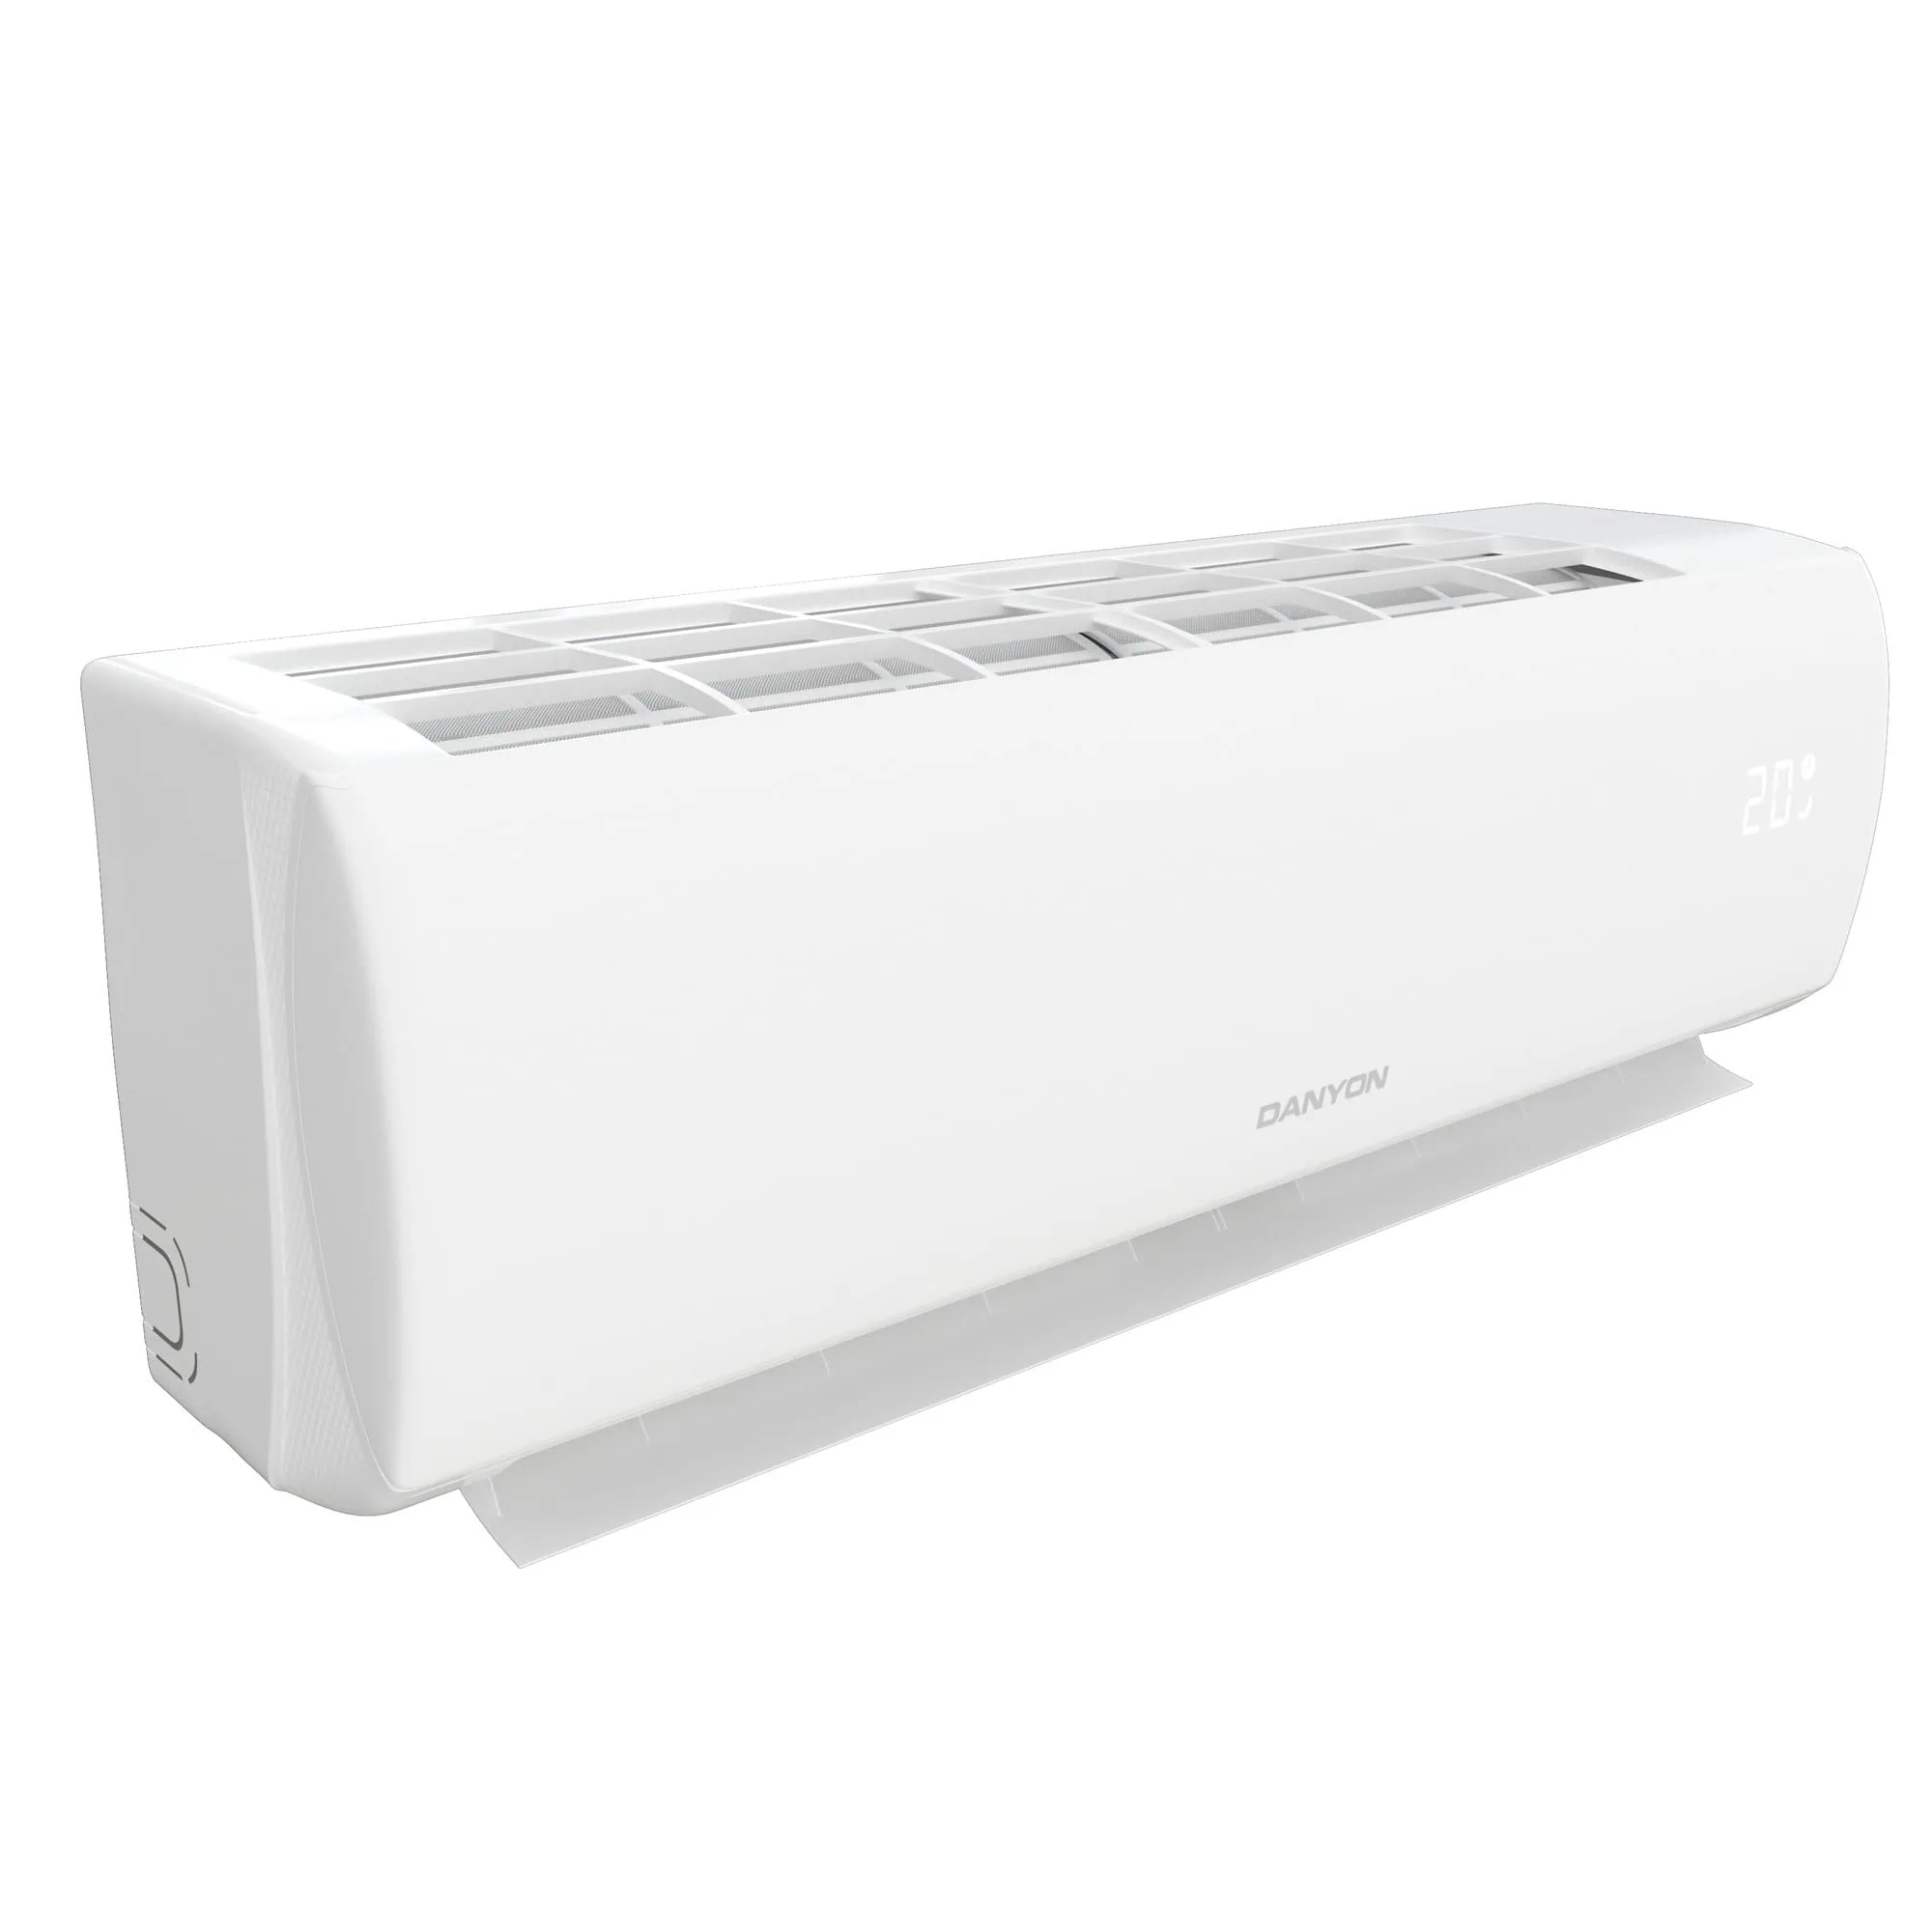 Quick Connect für den schnellen Anschluss Ihrer Klimaanlage